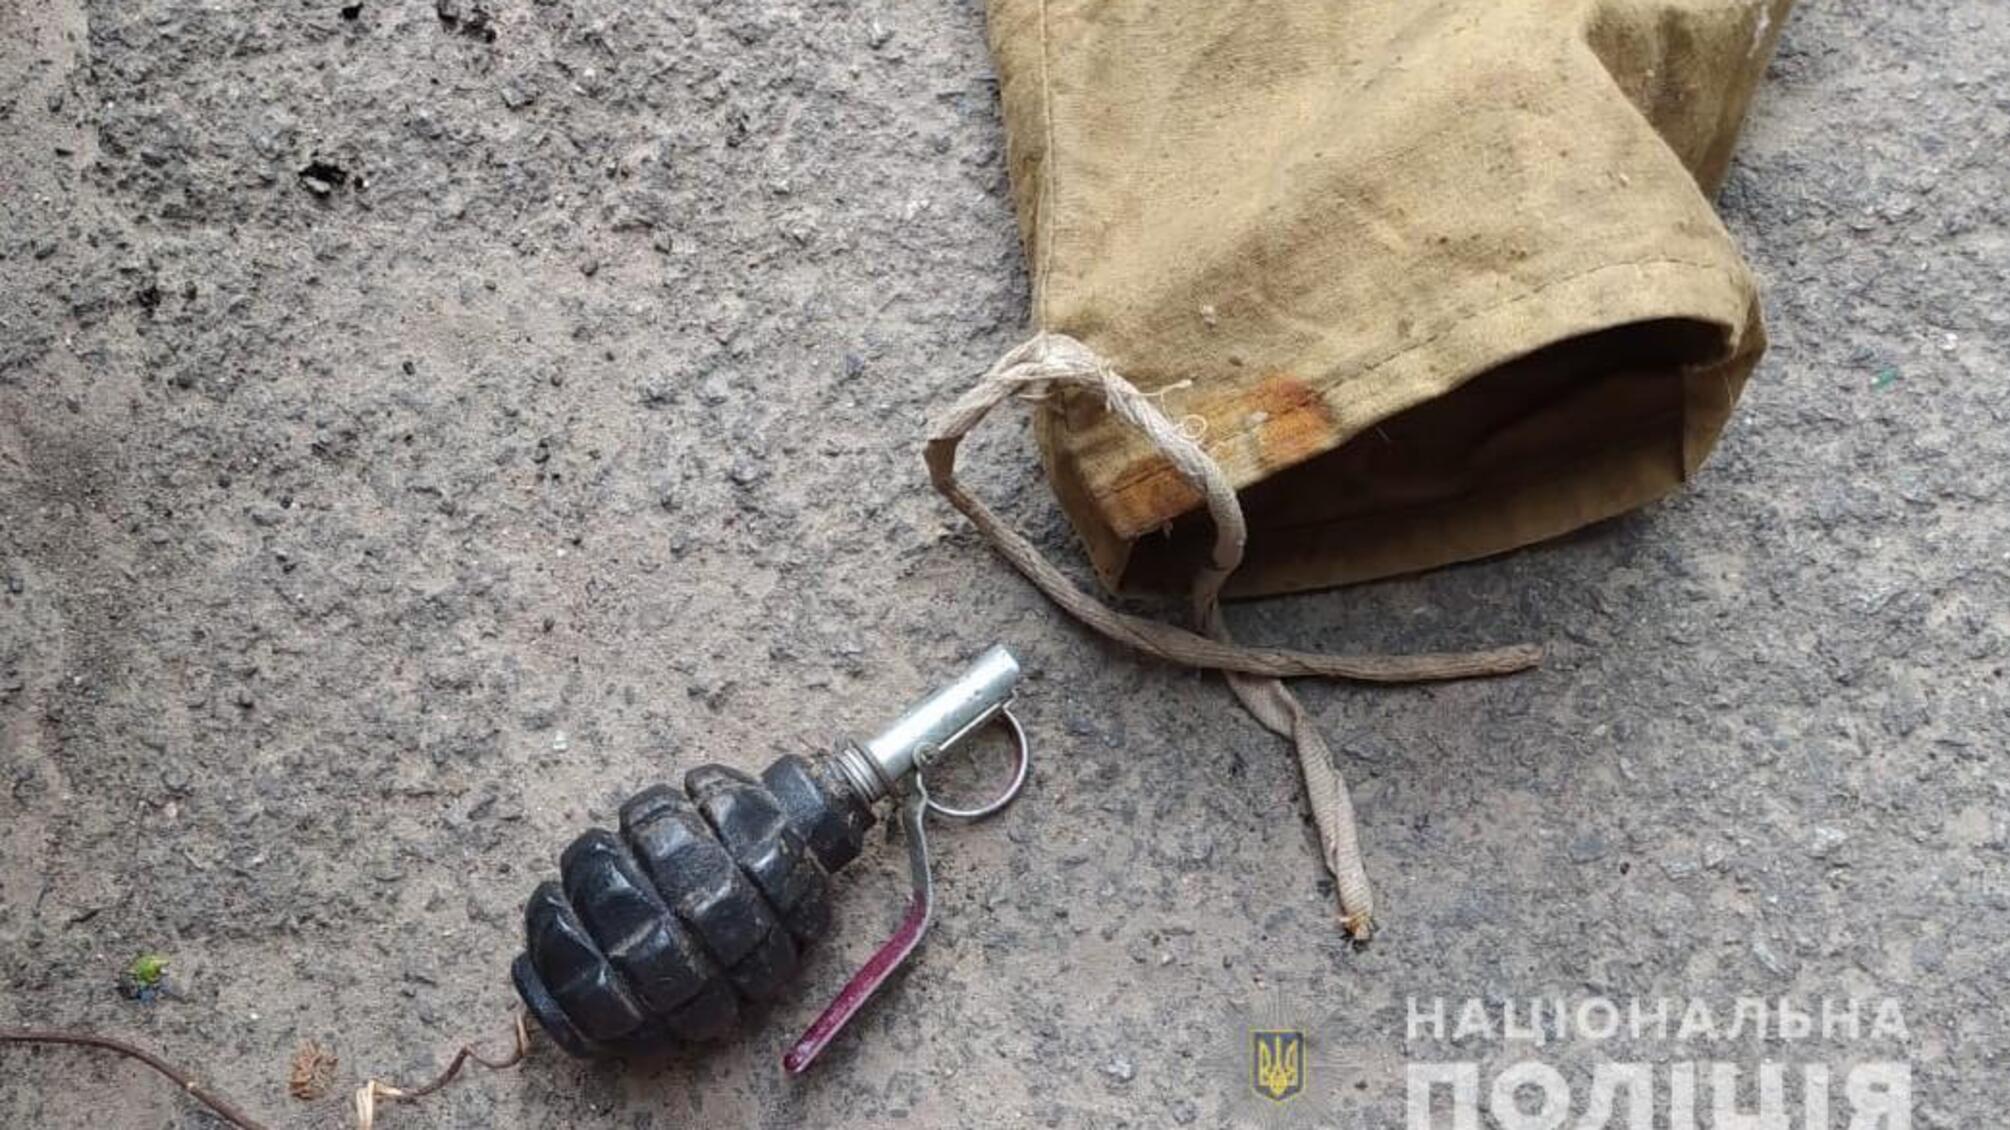 Поліцейські вилучили у жителя Овідіопольського району заборонені предмети та речовини